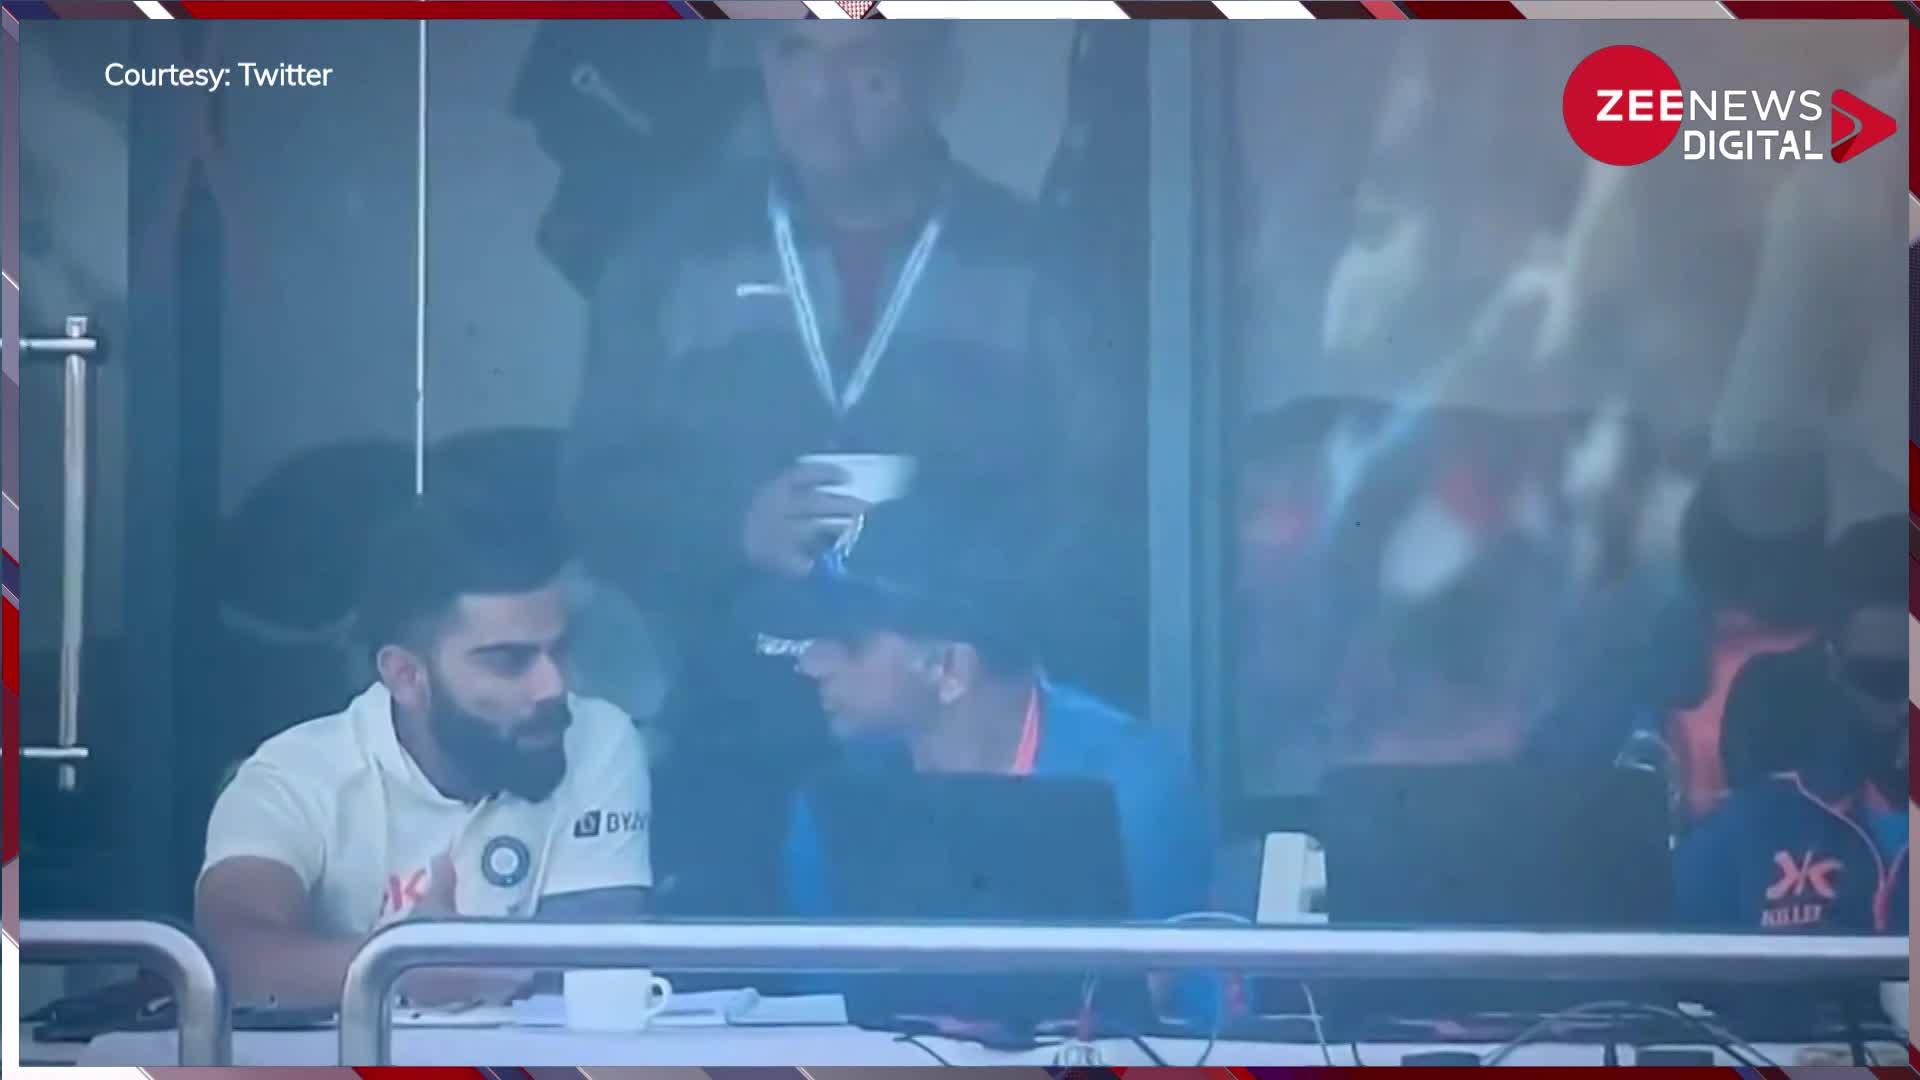 मैच के दौरान Rahul Dravid के साथ Virat Kohli की चल रही थी गंभीर चर्चा, तभी खाना देख दिया ऐसा रिएक्शन, वीडियो हो गया वायरल